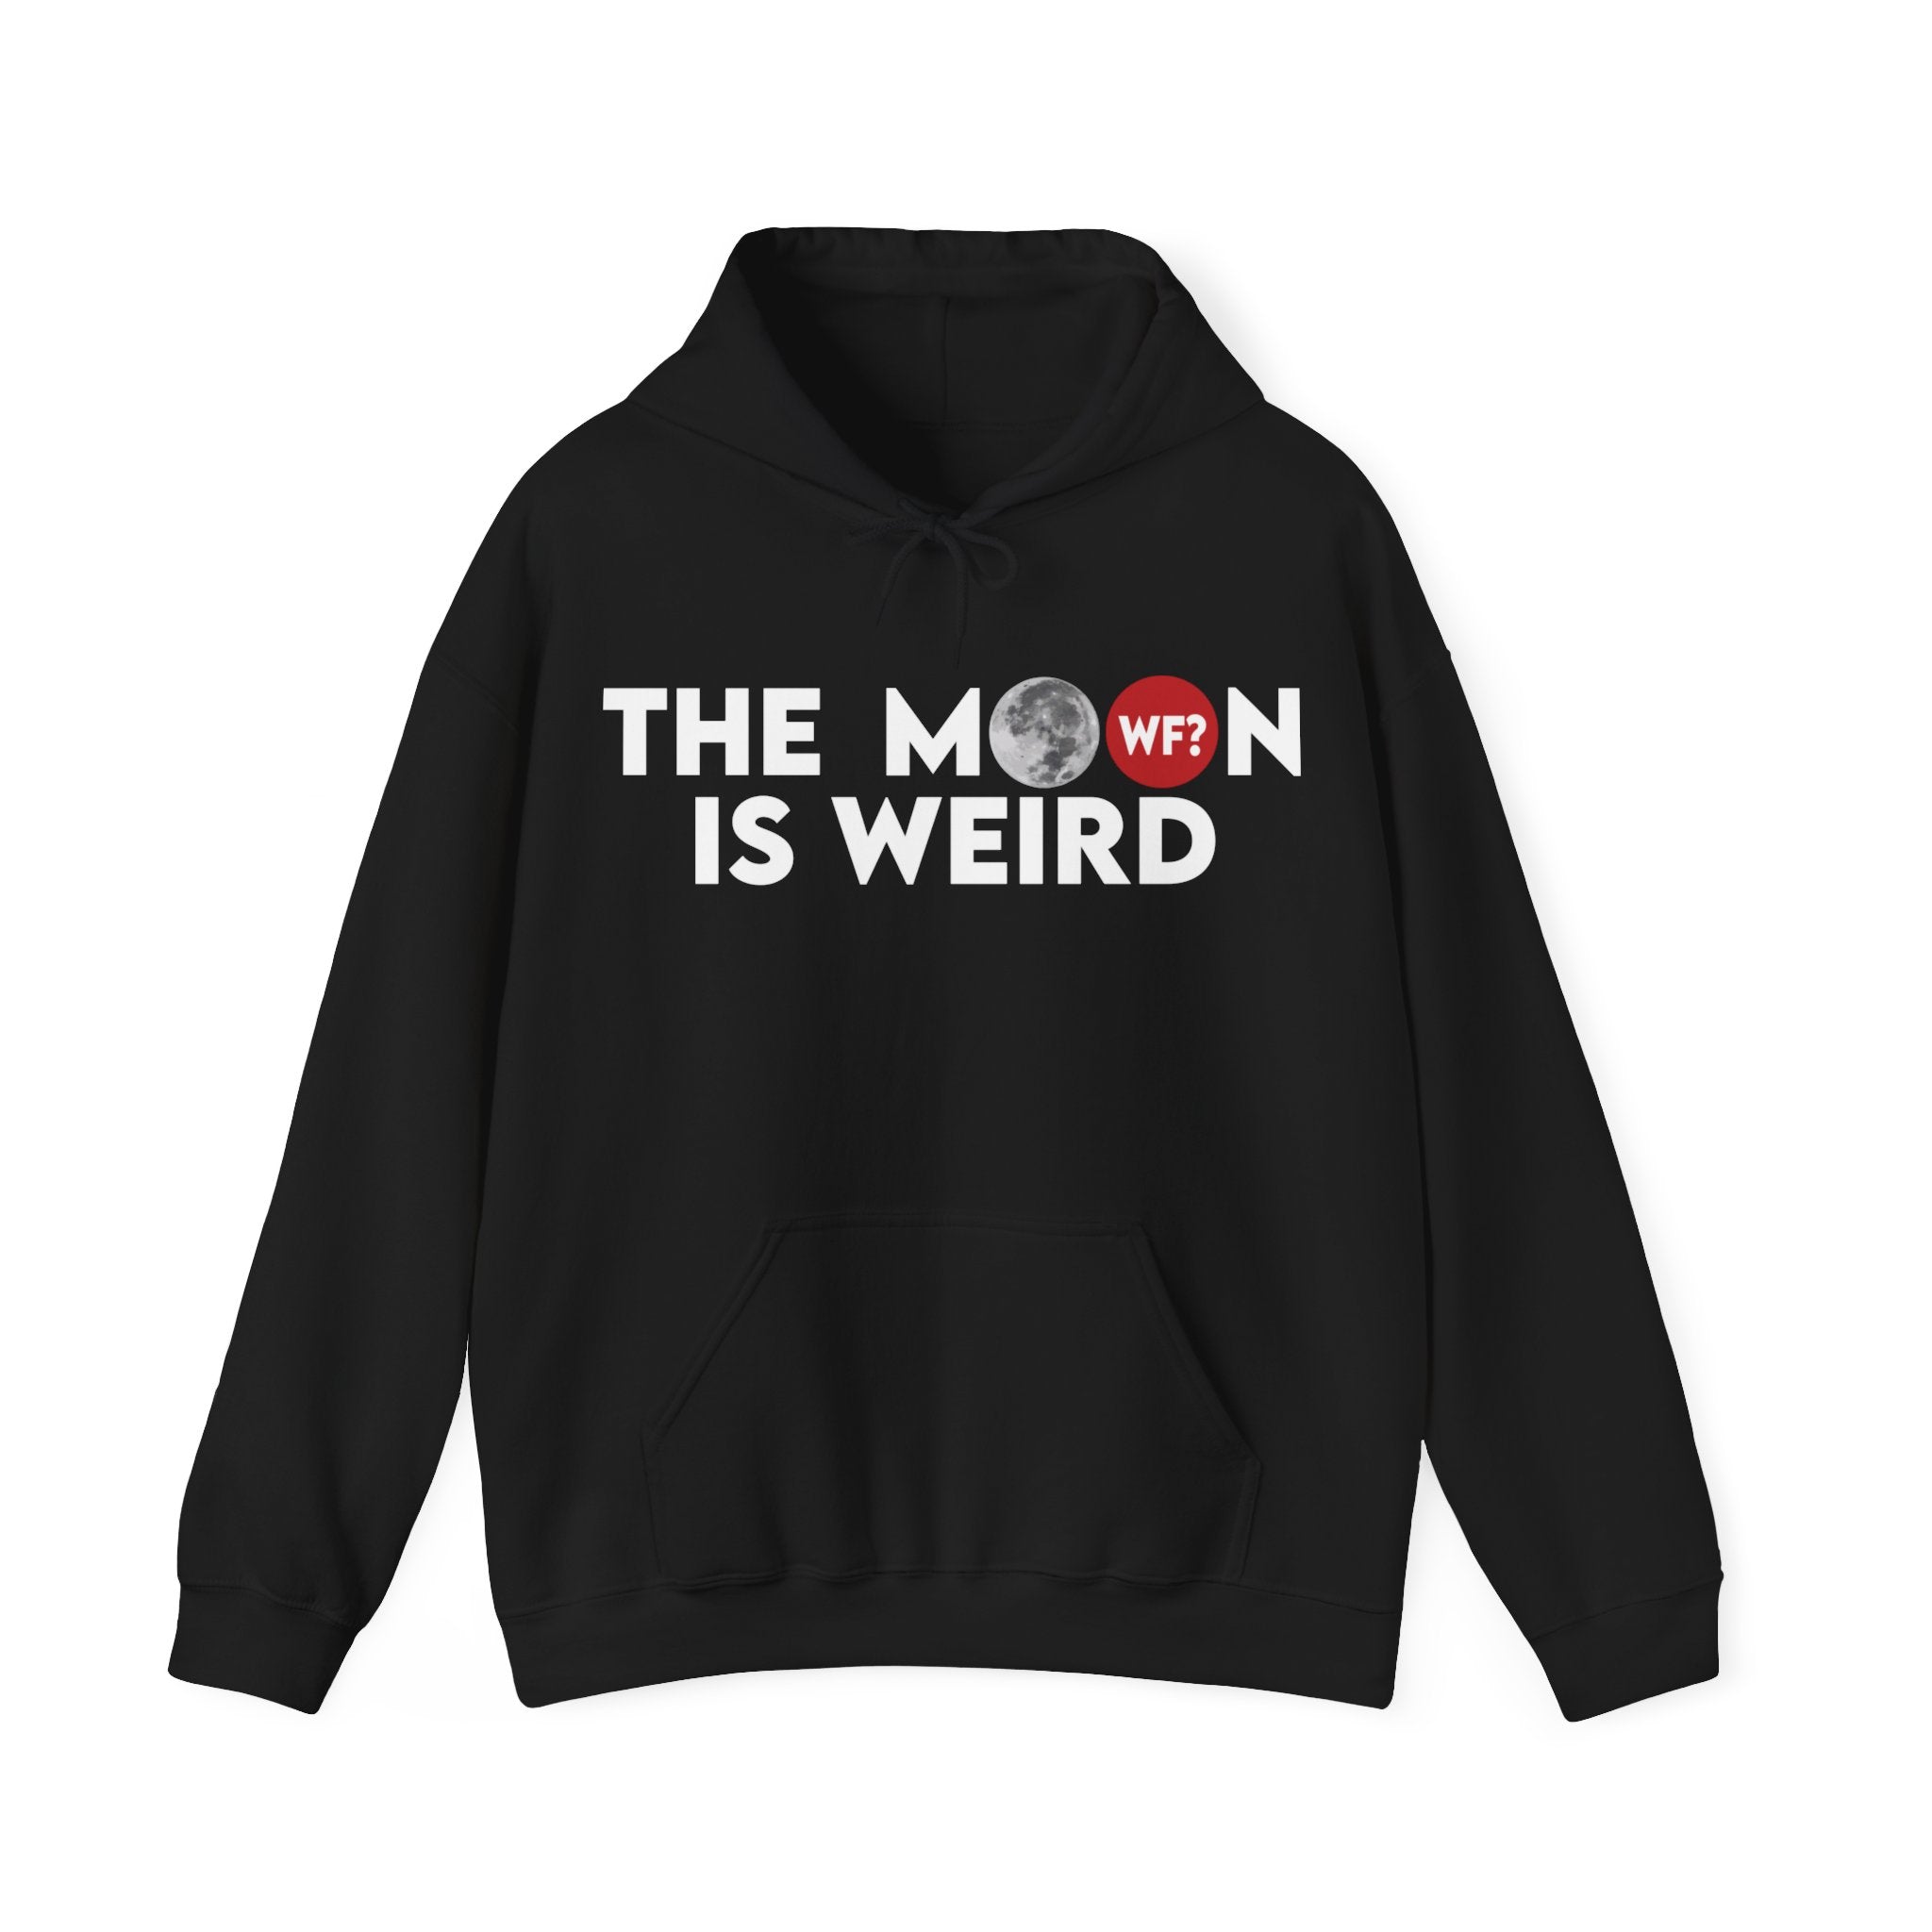 Buy black The Moon is Weird Hooded Sweatshirt